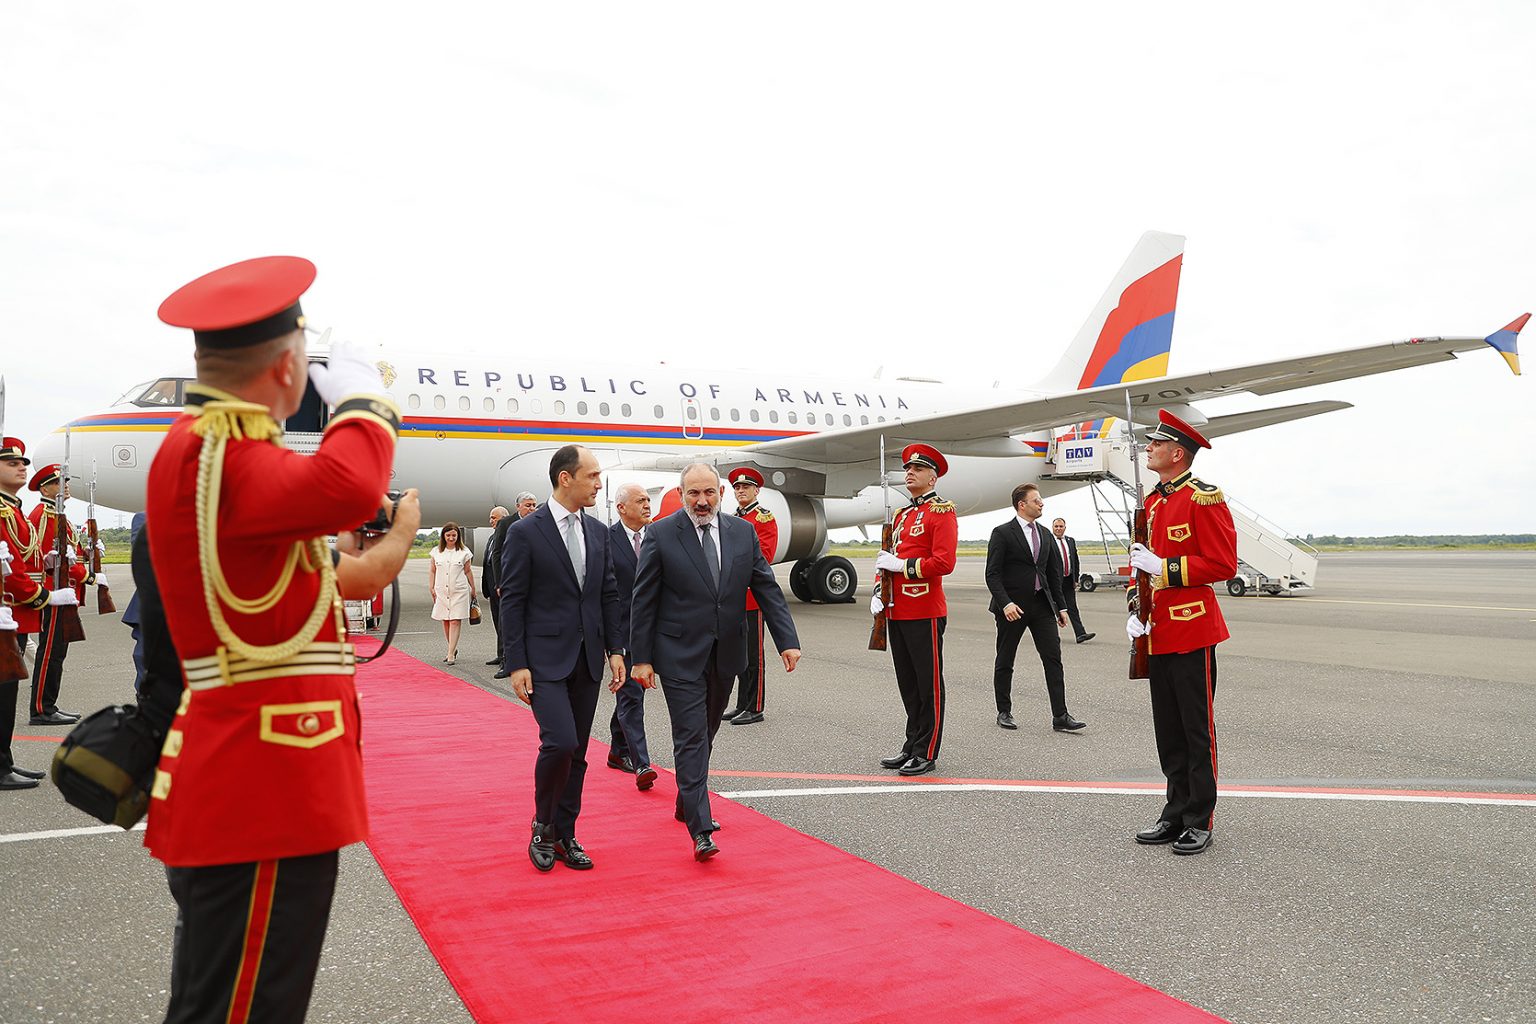 Премьер-министр Пашинян с рабочим визитом прибыл в Грузию